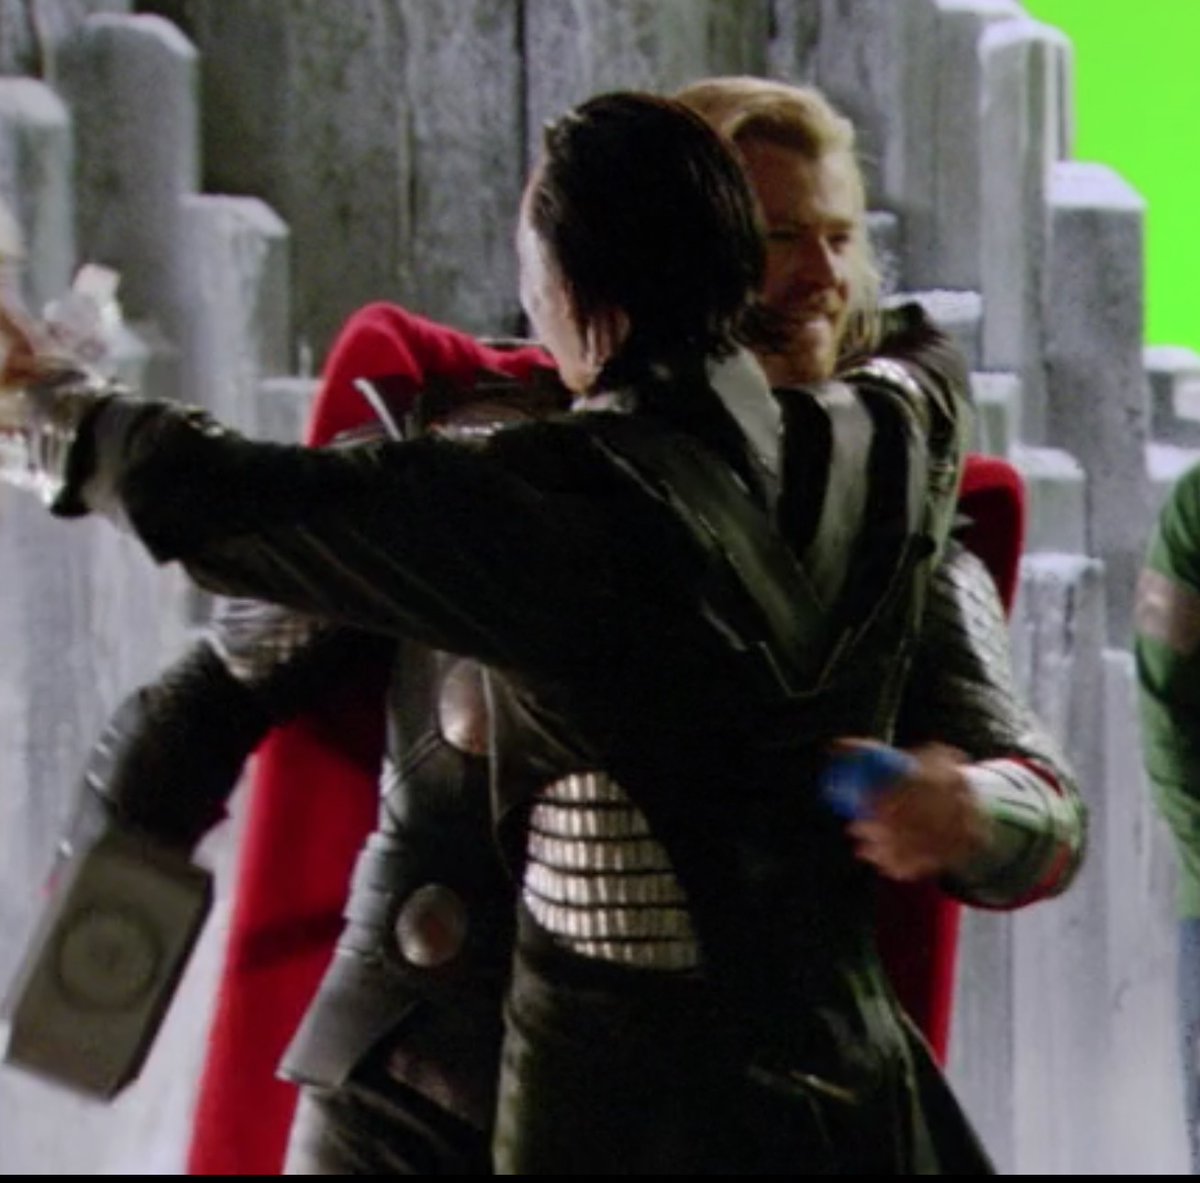 RT @havanesemom13: Tom Hiddleston and Chris Hemsworth bts

Let Thor and Loki hug on screen! https://t.co/kgft8gJX2j